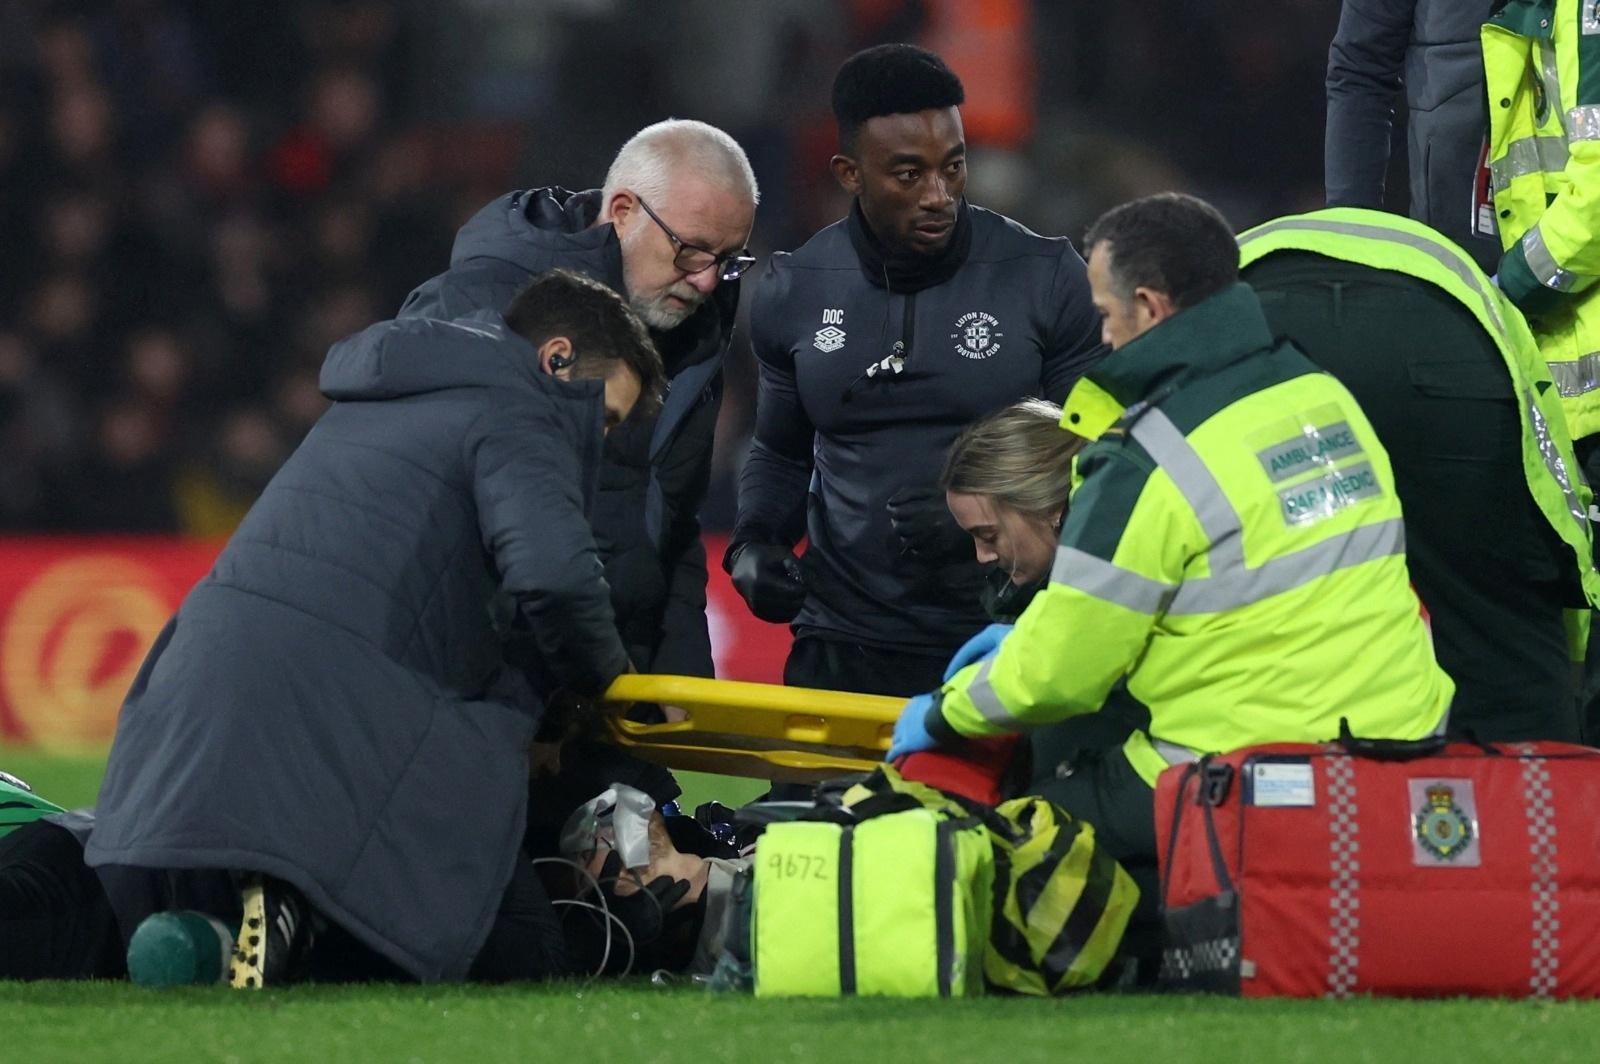 Jogador da Premier League sofre parada cardíaca em campo